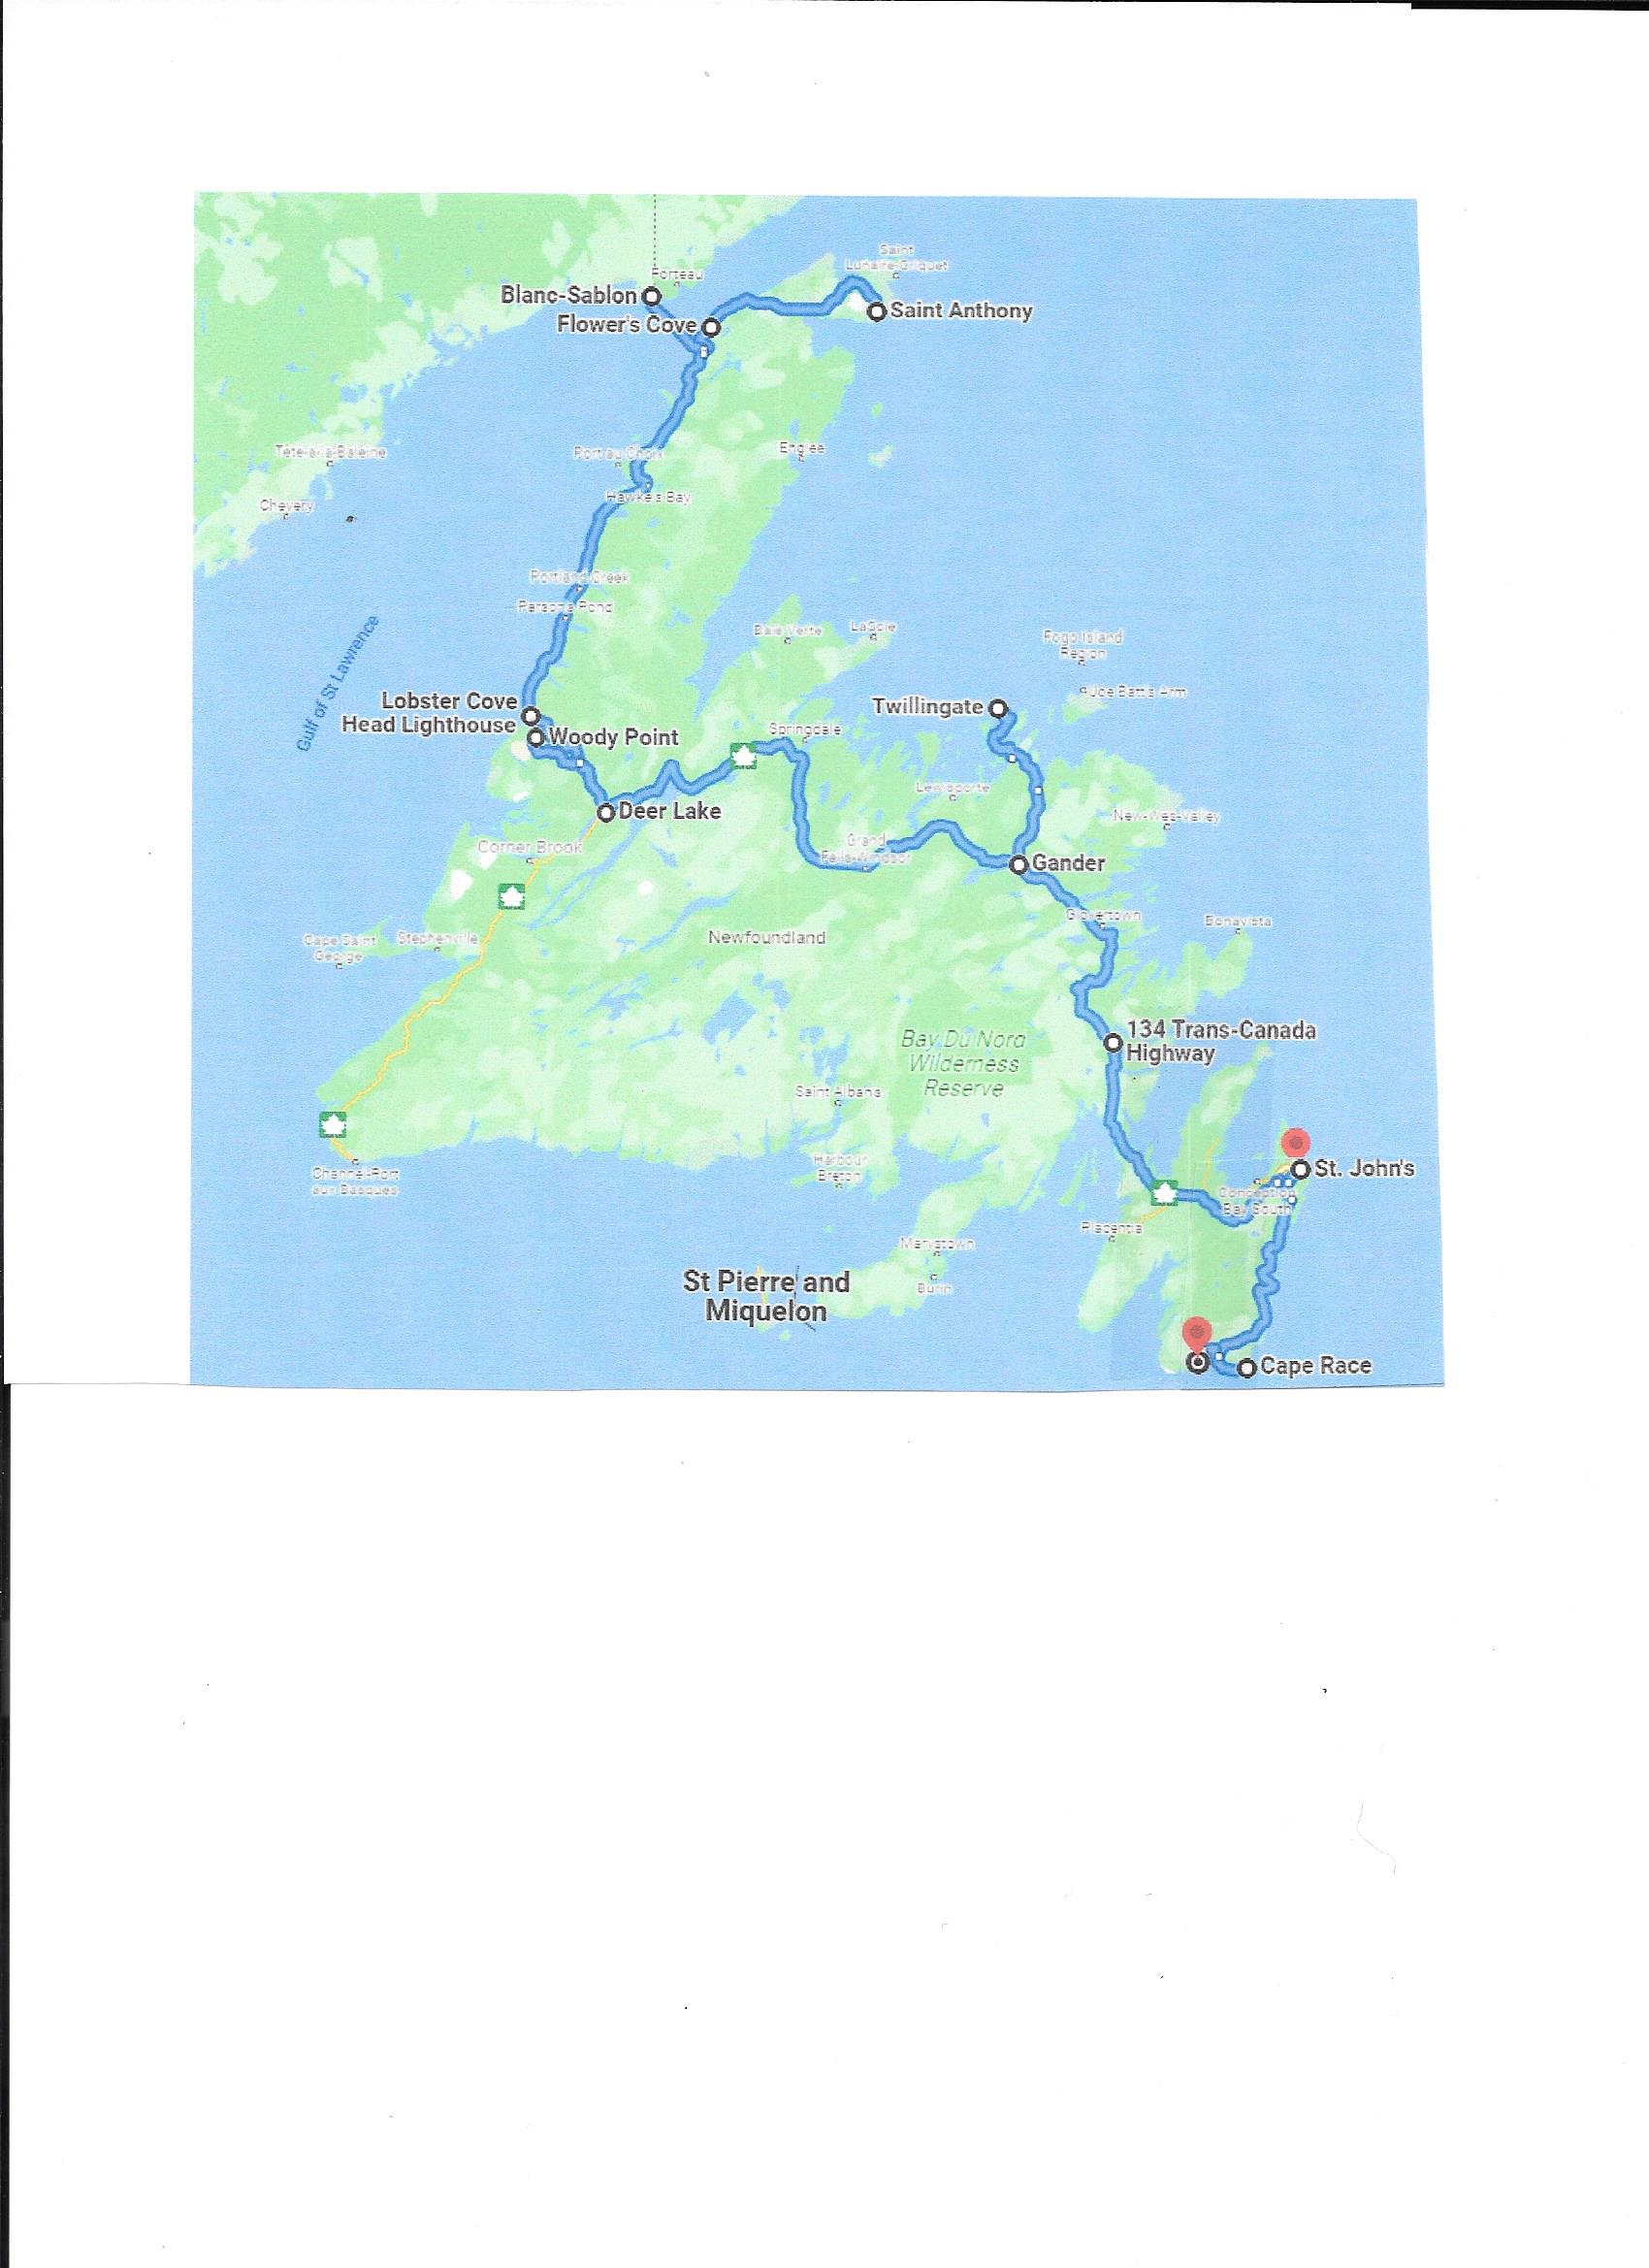 Newfoundland/Labrador route